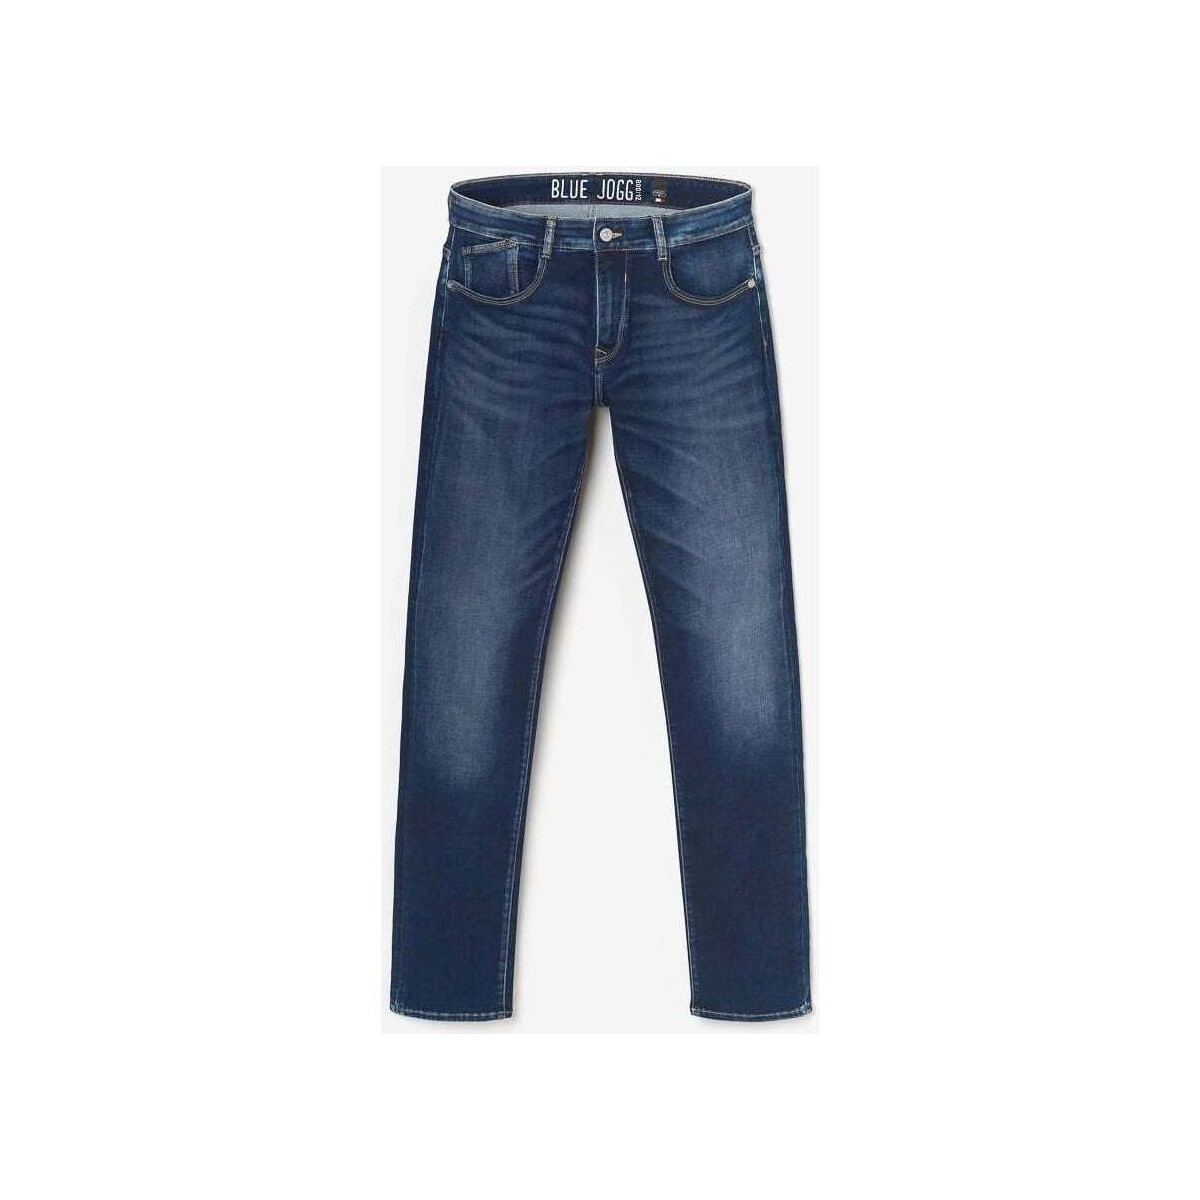 Le Temps des Cerises Bleu Jogg 800/12 regular jeans ble